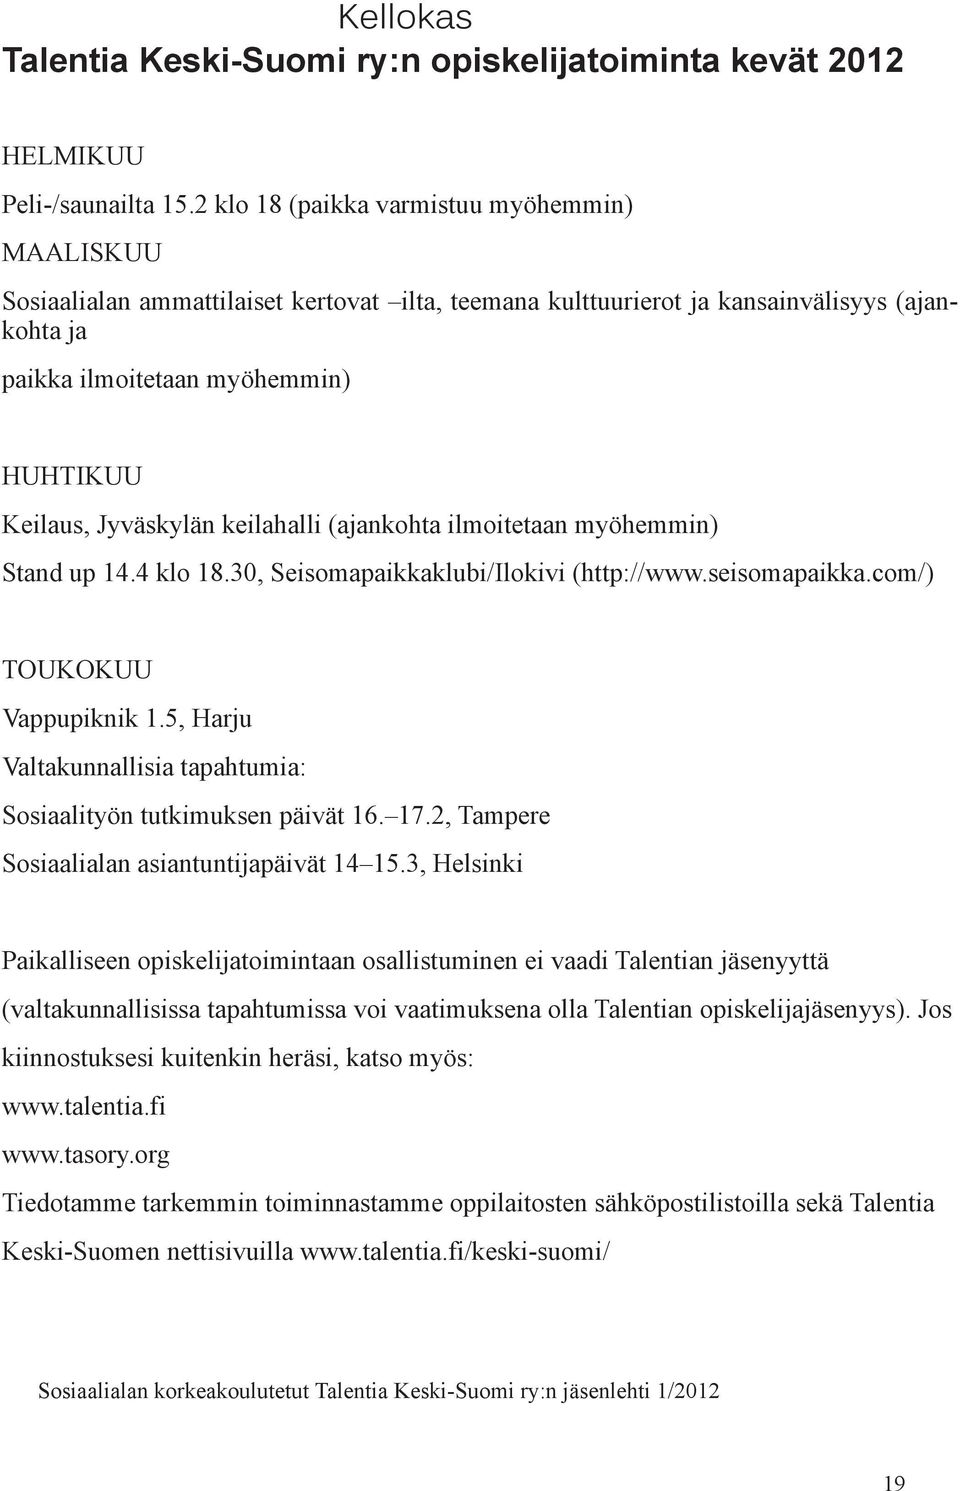 Jyväskylän keilahalli (ajankohta ilmoitetaan myöhemmin) Stand up 14.4 klo 18.30, Seisomapaikkaklubi/Ilokivi (http://www.seisomapaikka.com/) Toukokuu Vappupiknik 1.